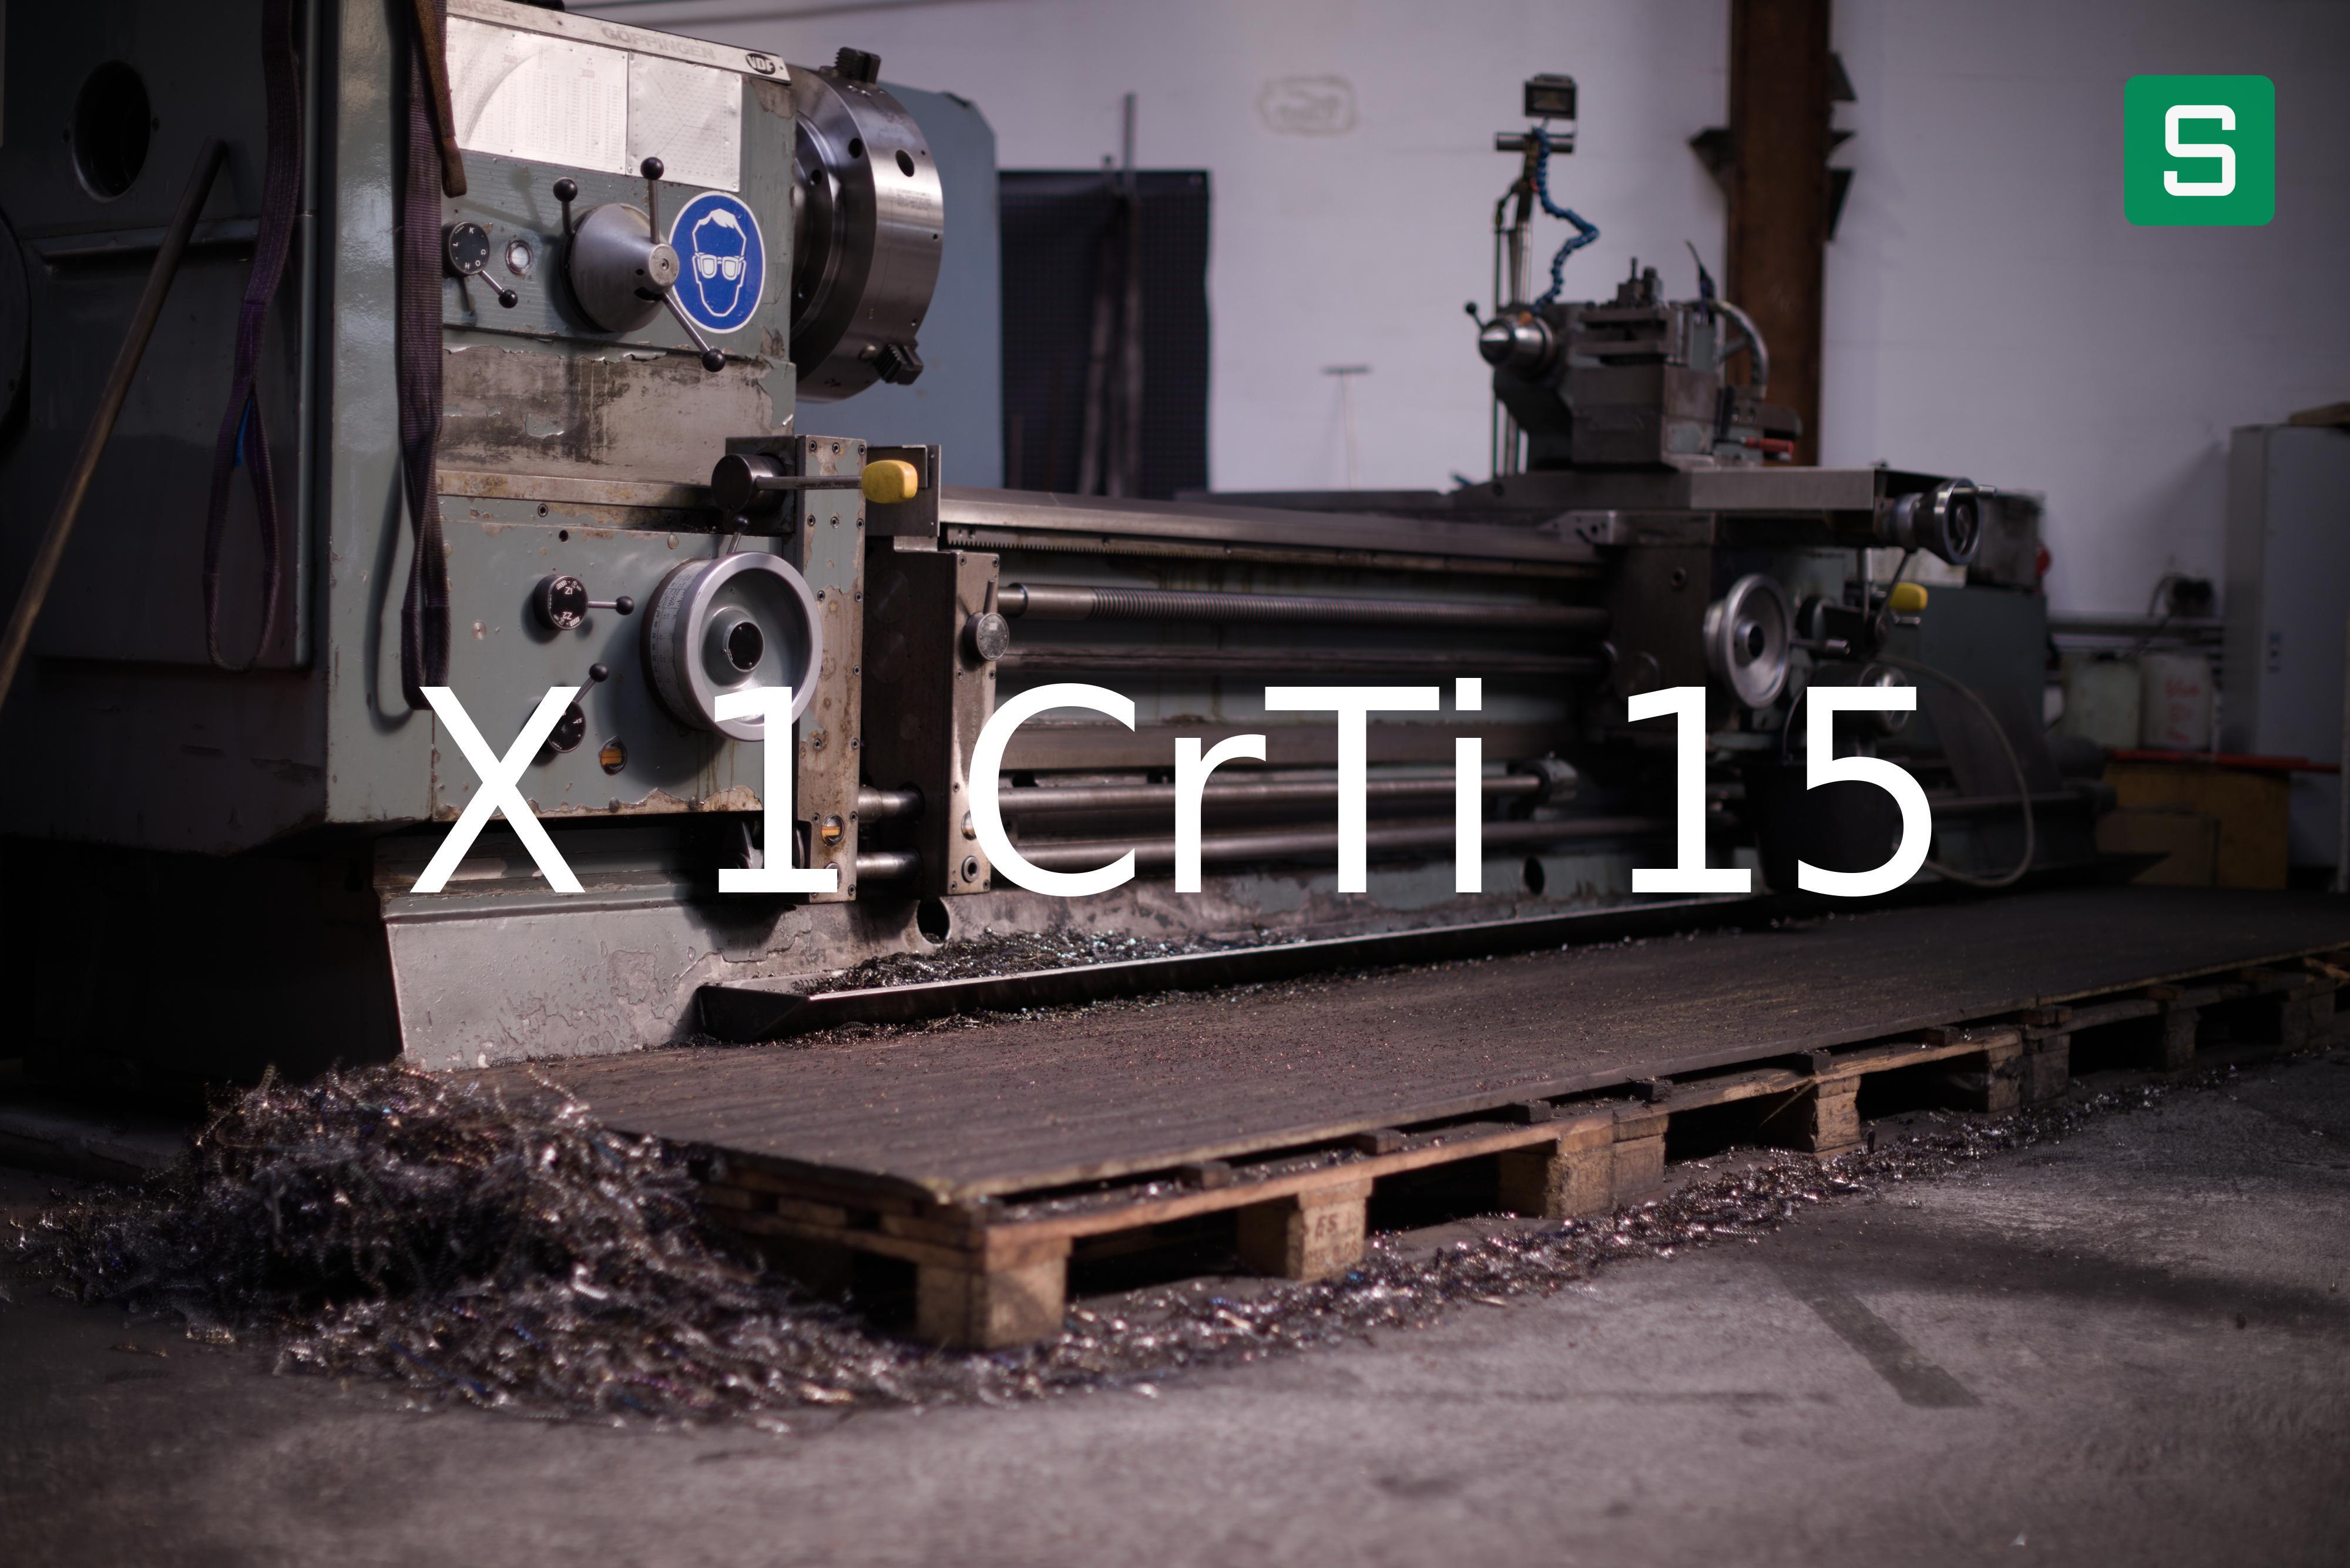 Steel Material: X 1 CrTi 15